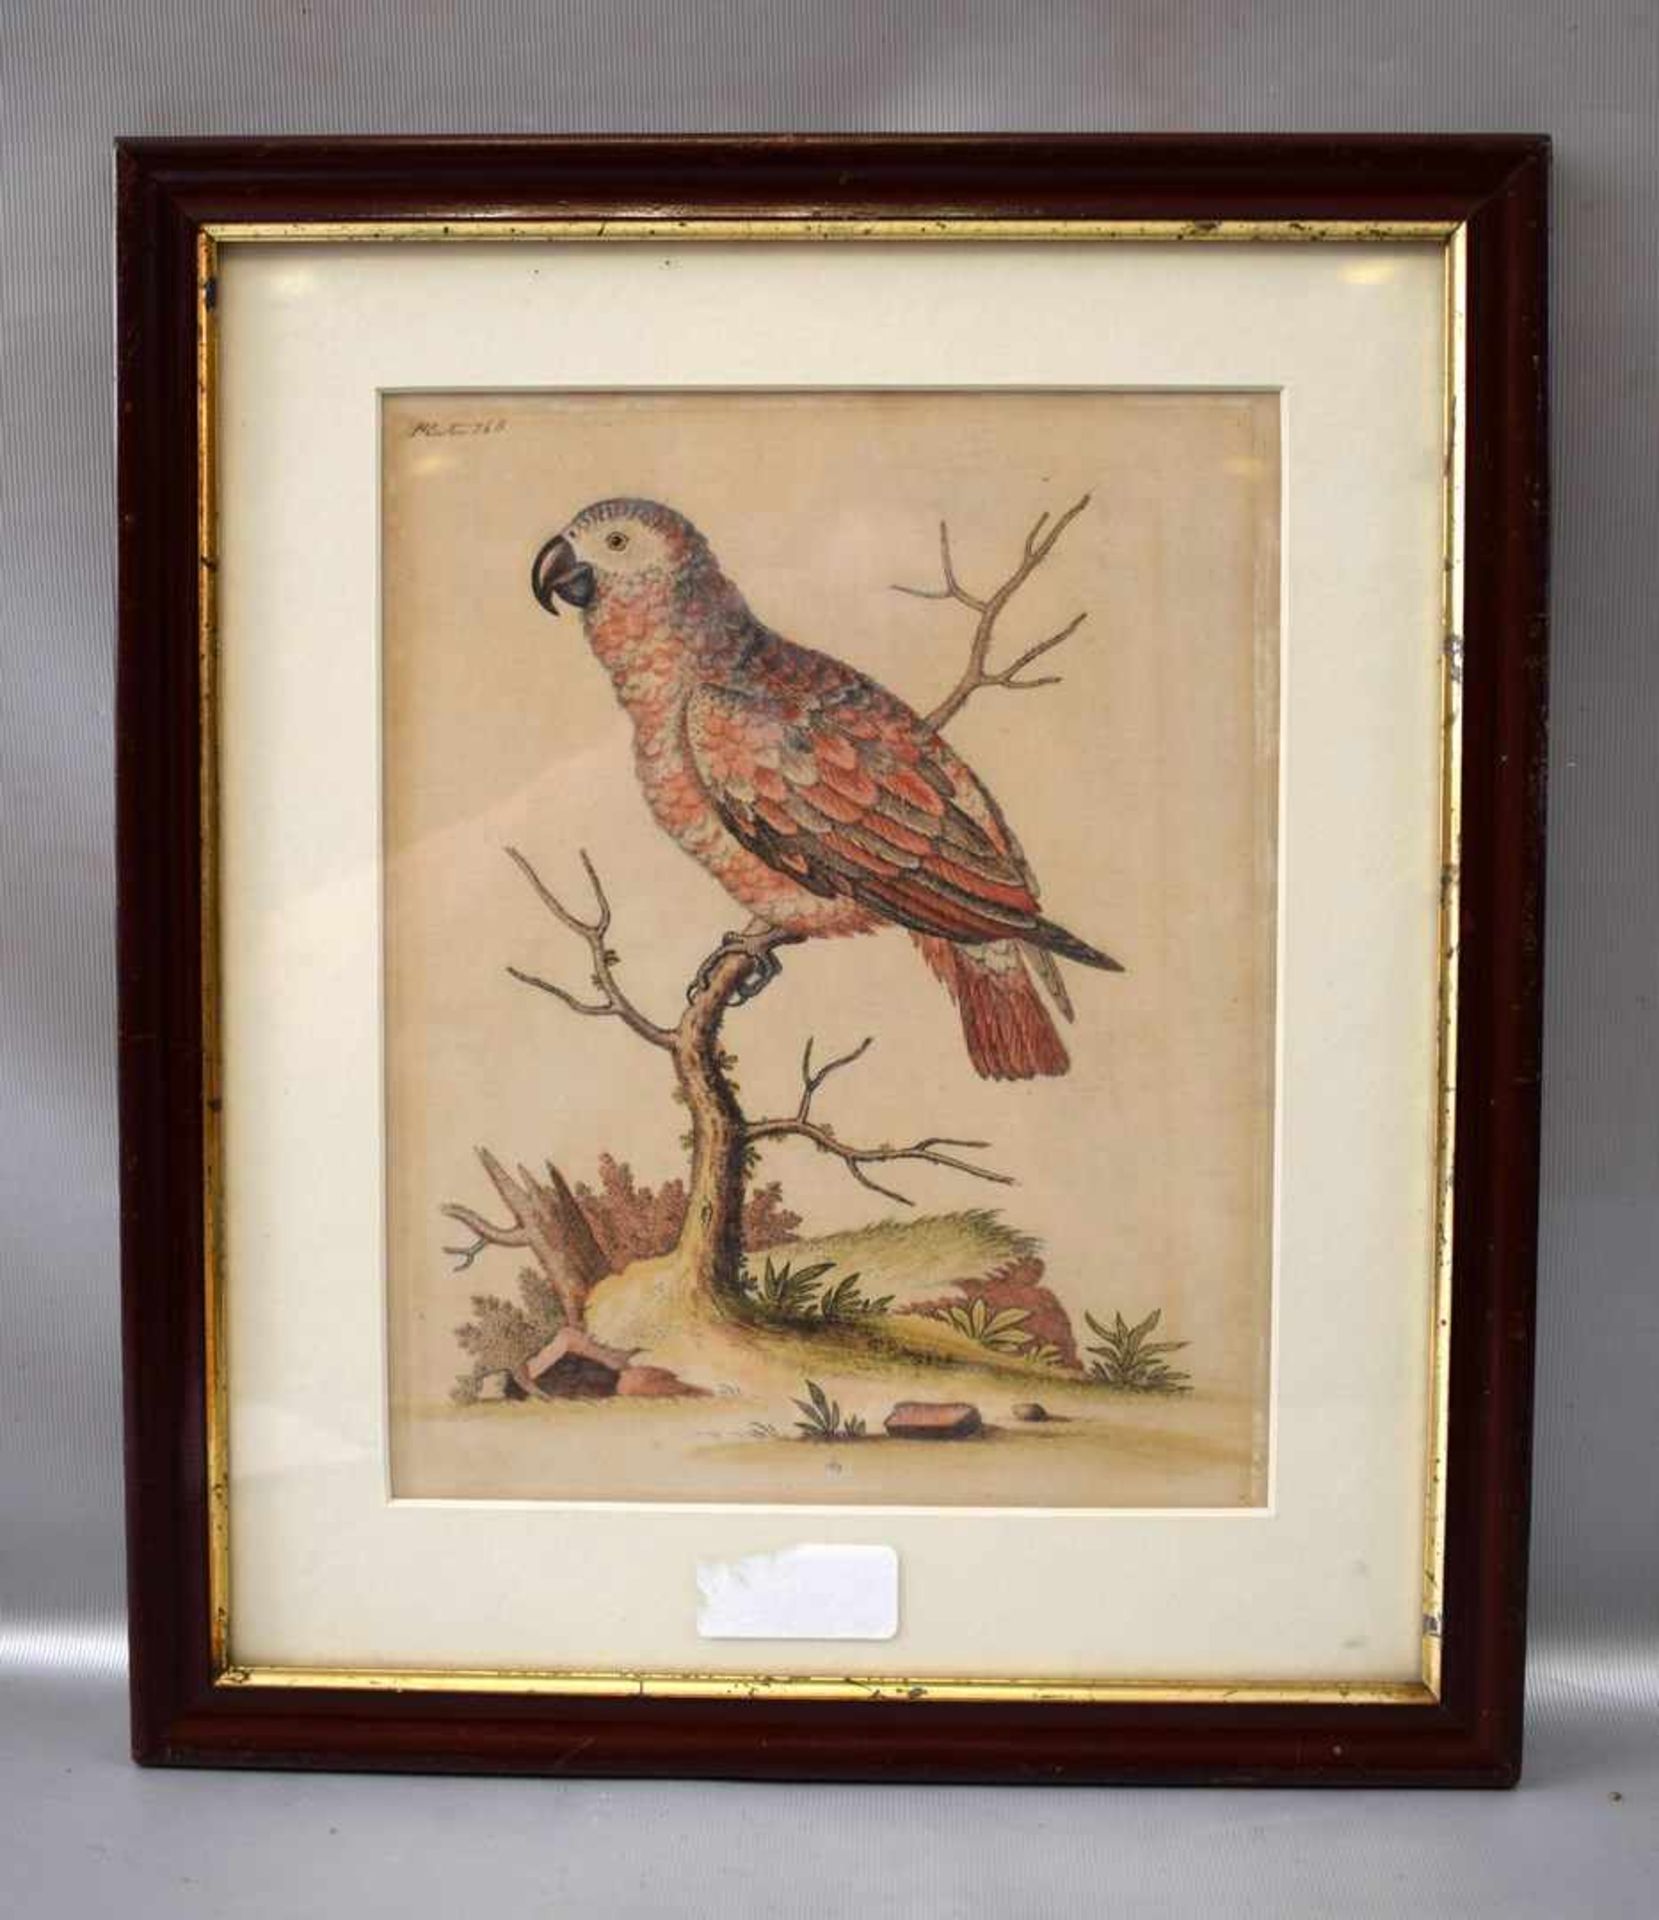 Stahlstich Vogel auf Ast sitzend, coloriert, im Rahmen, 31 X 36 cm, um 1800